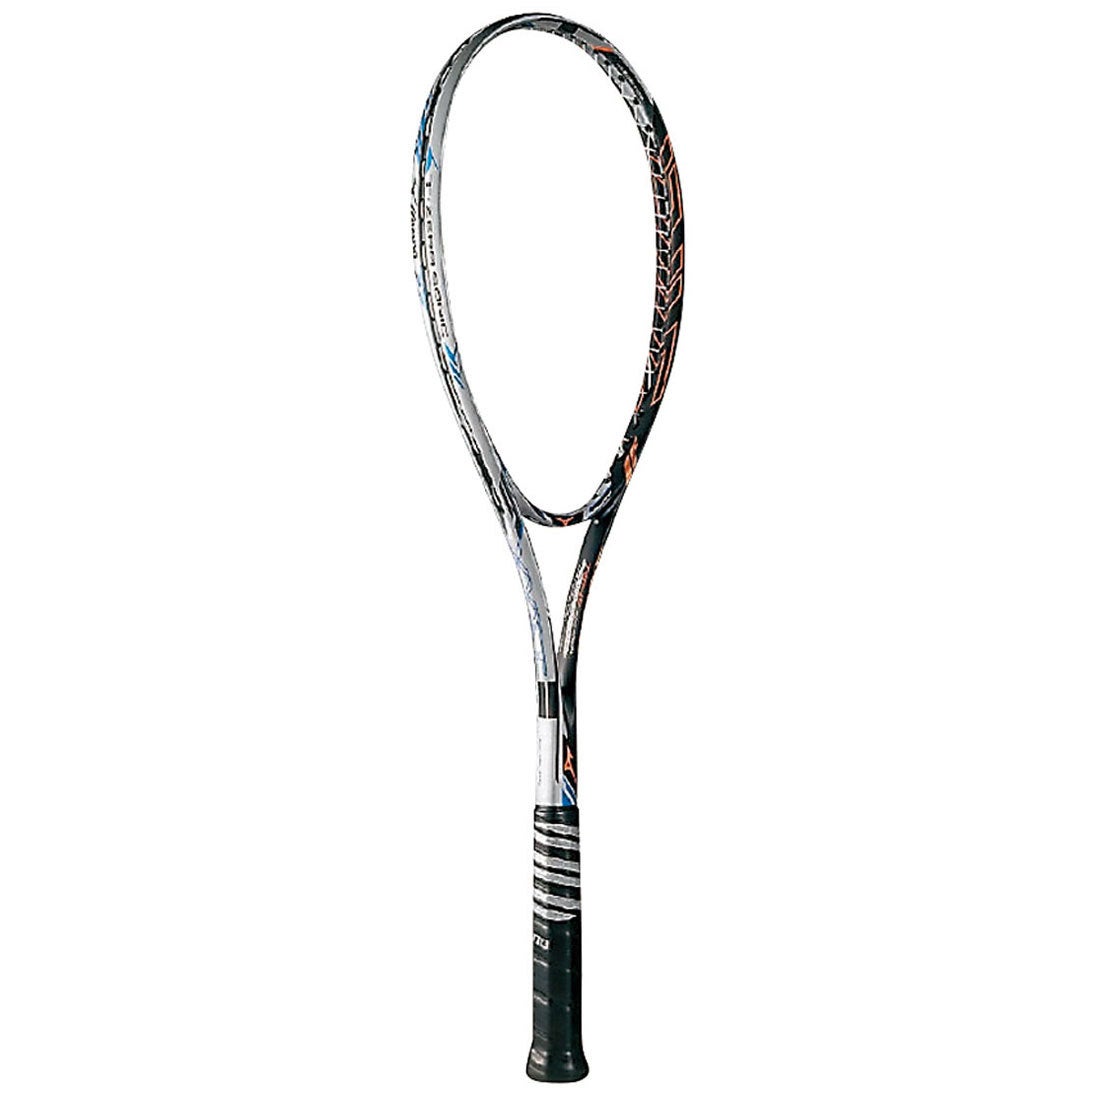 ミズノ MIZUNO ユニセックス 軟式テニス 未張りラケット XYST T-ZERO SONIC(ジストティーゼロソニック) 63JTN73754 247